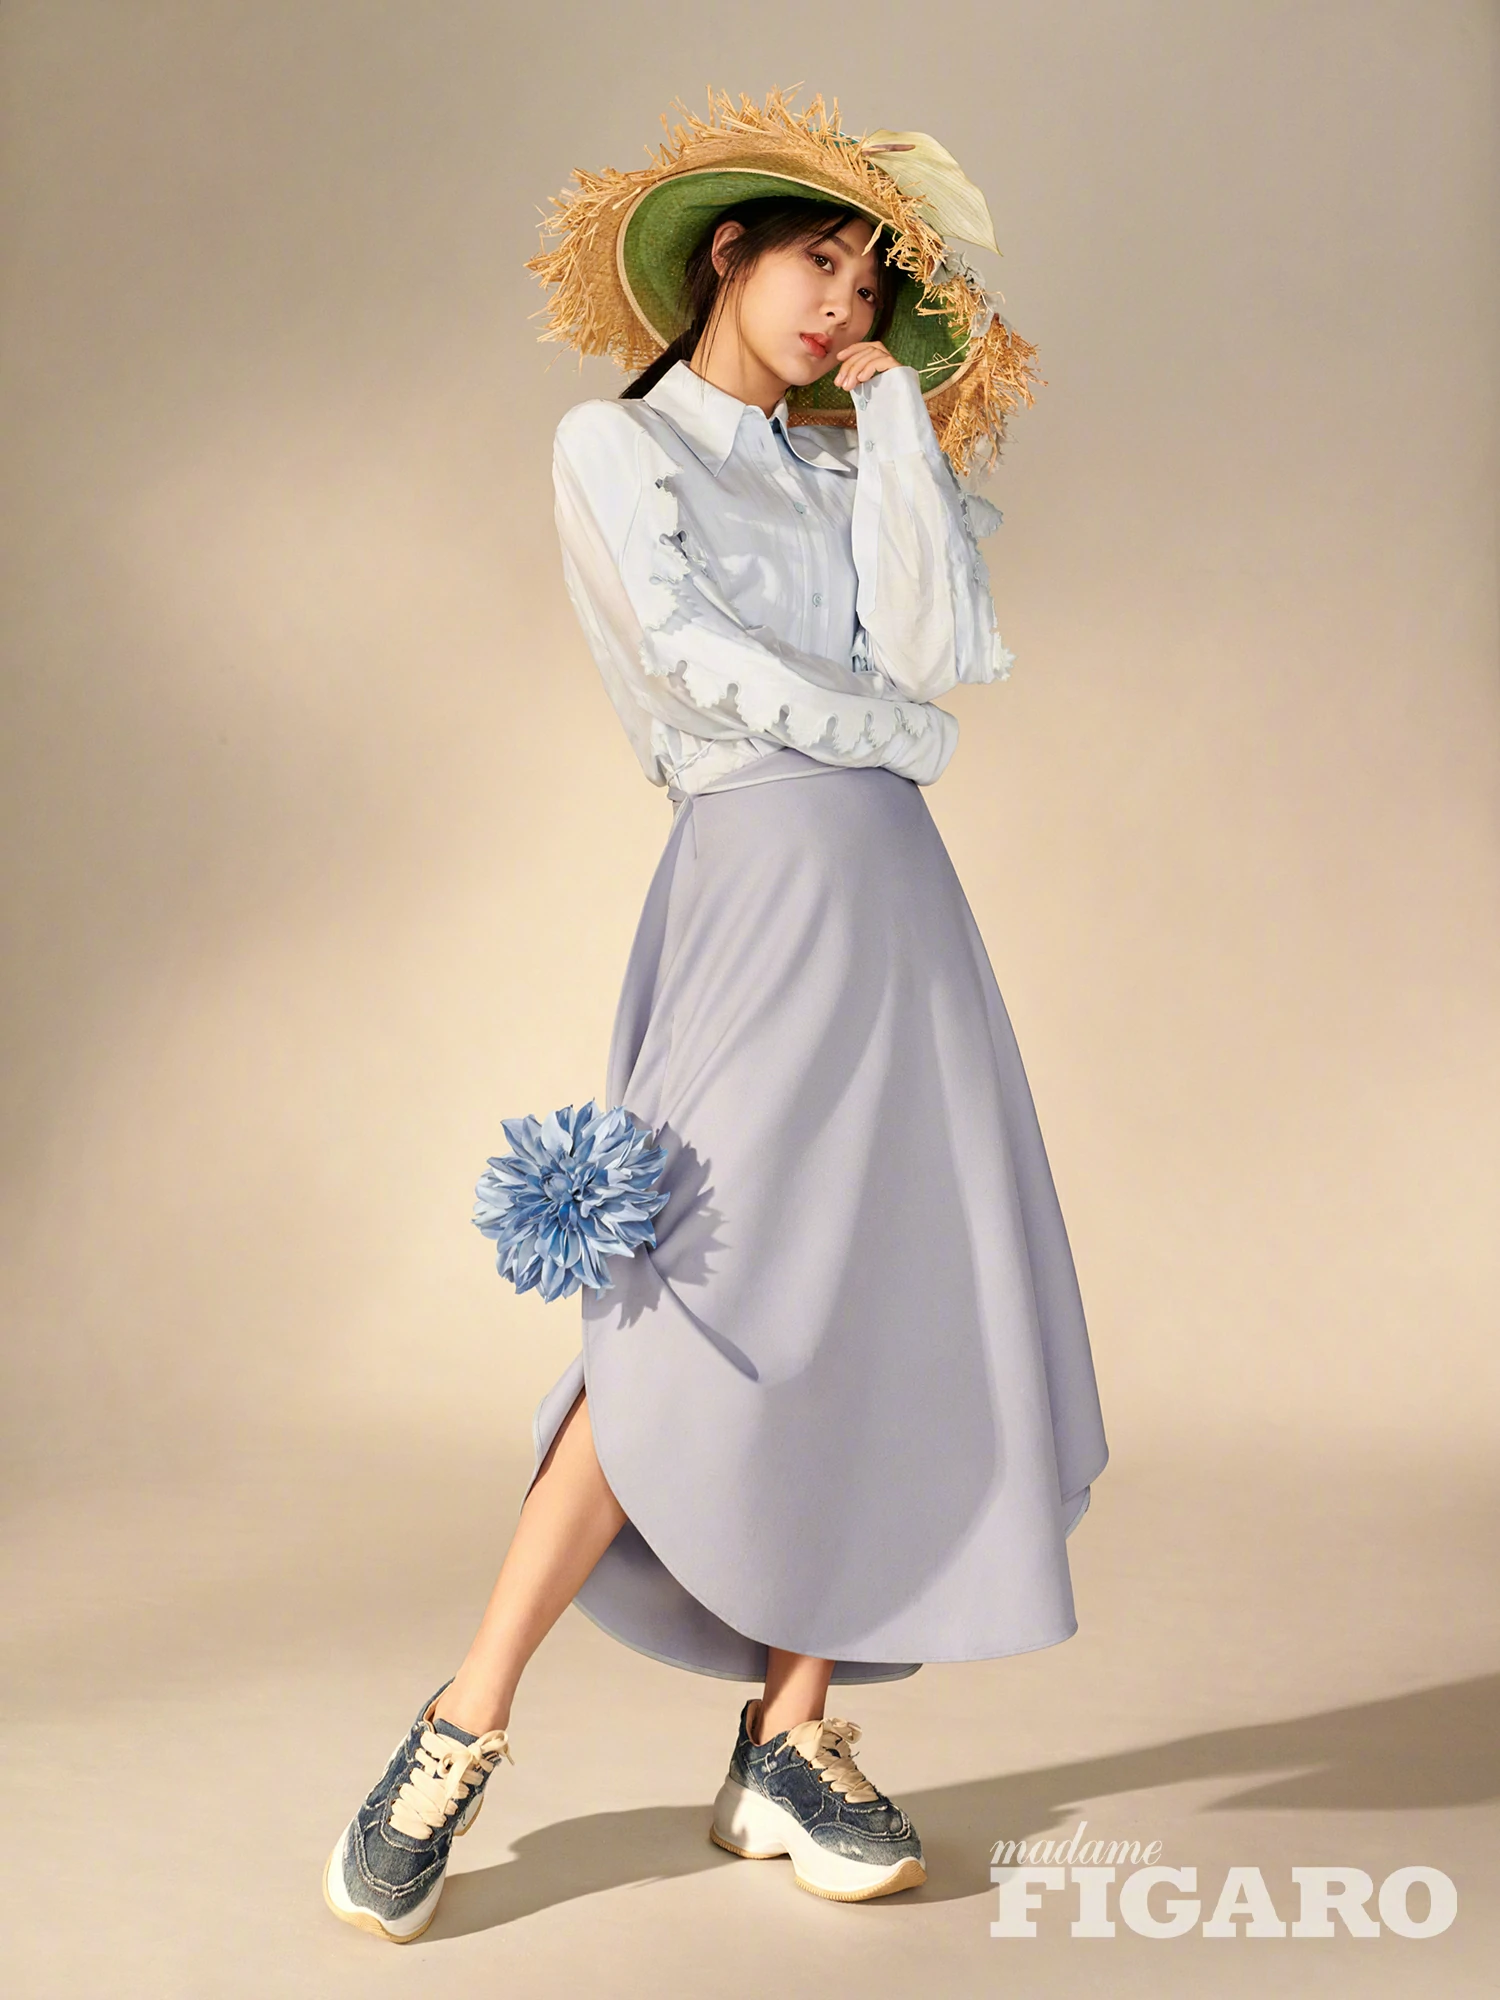 杨紫鲜花草帽造型优雅文艺 身穿纯色系长裙更显气质,